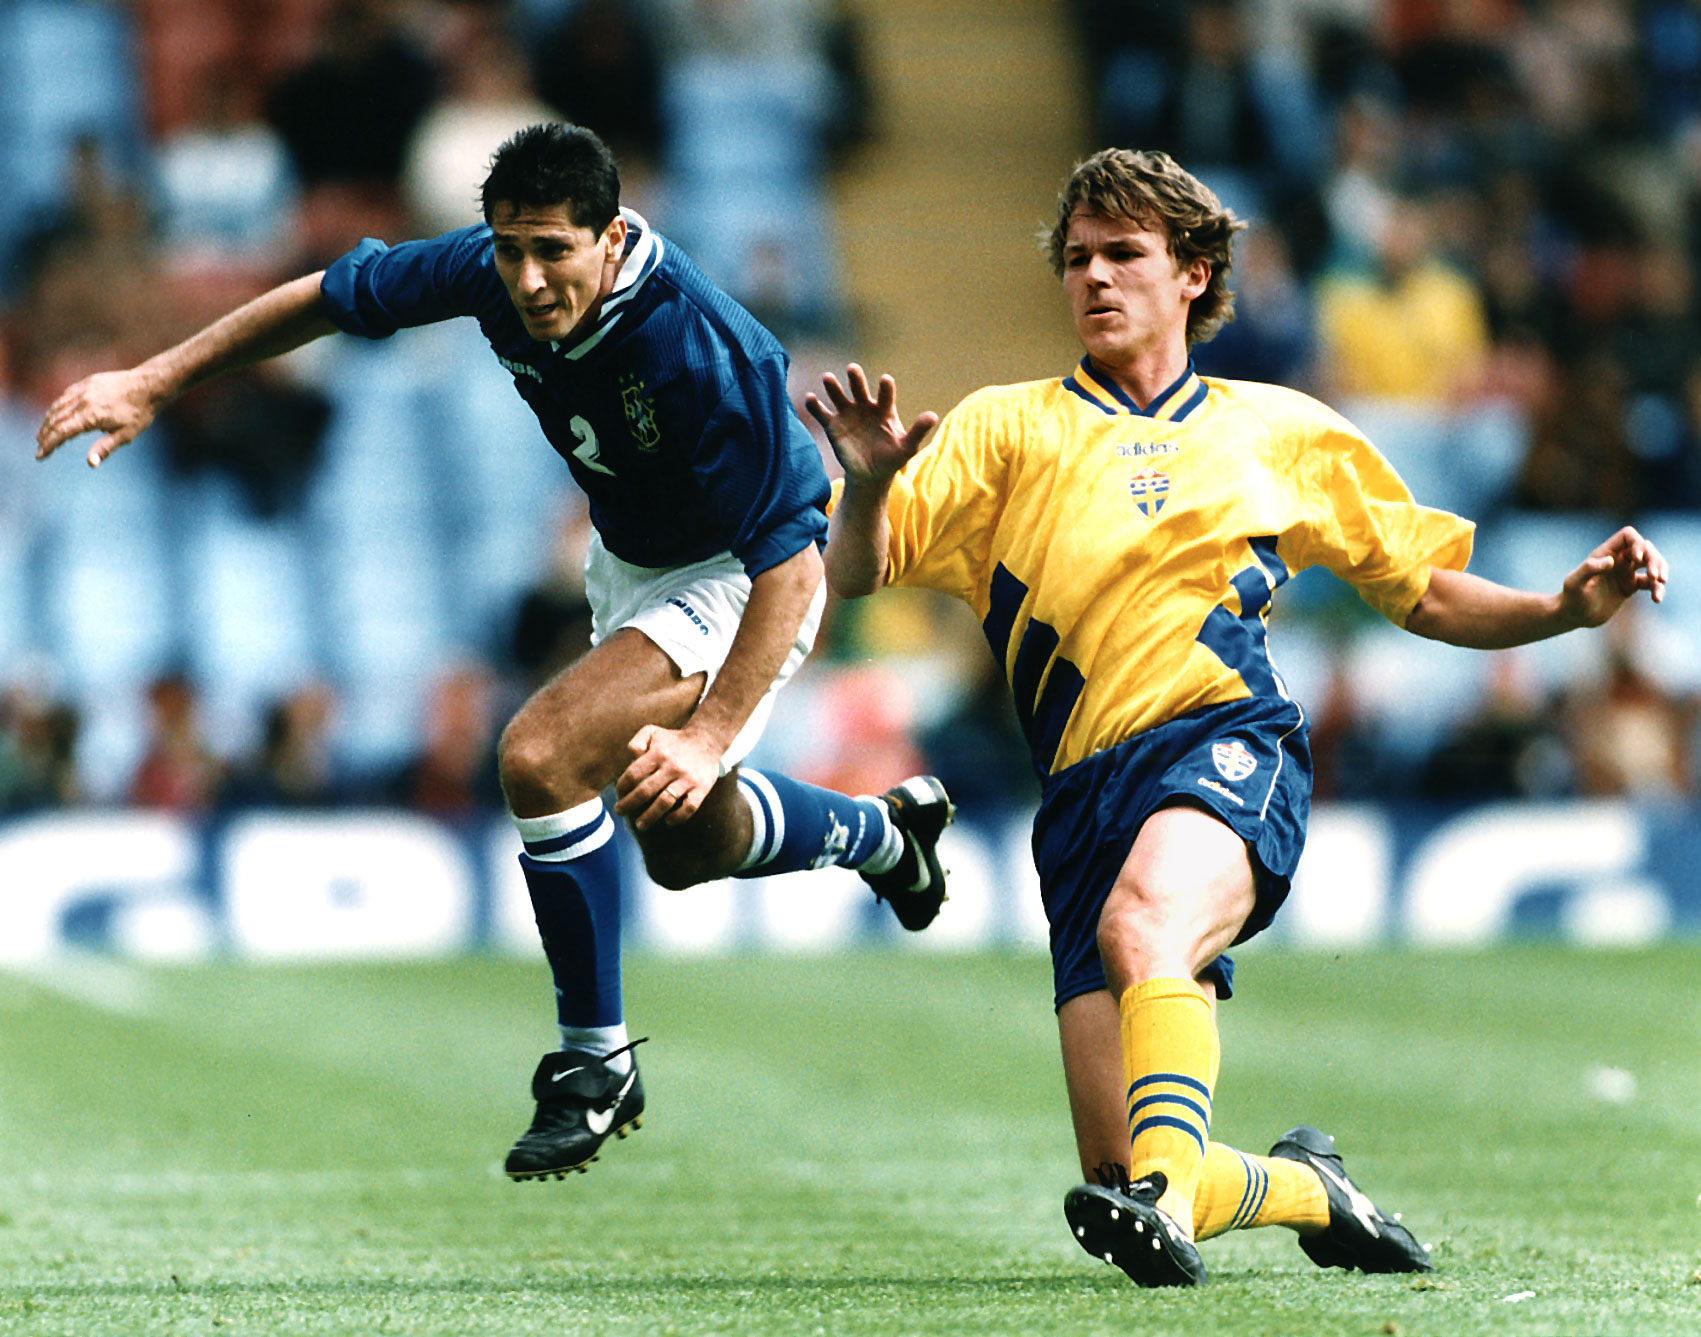 Dessutom var "Erling" med och vann VM-brons med Sverige 1994.